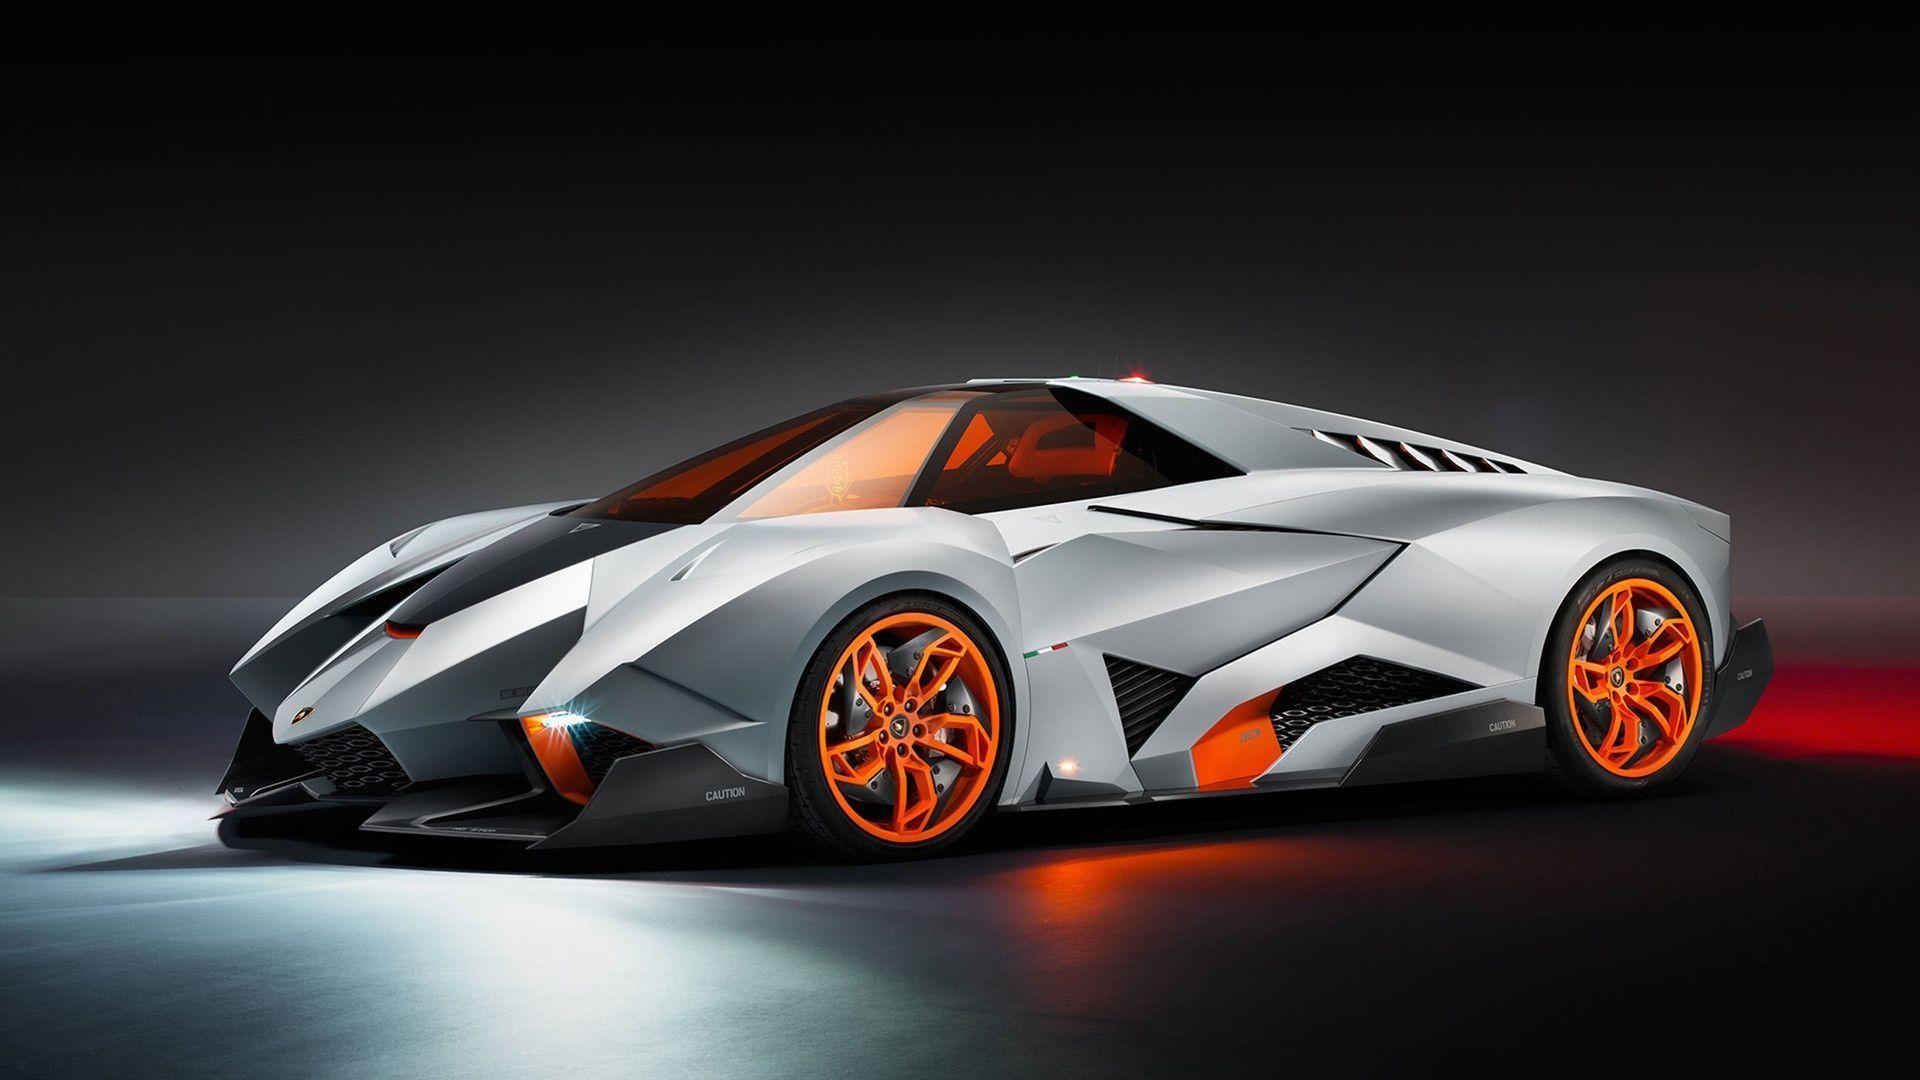 Lamborghini Egoista Concept Car 2015 Wallpaper. Widescreen